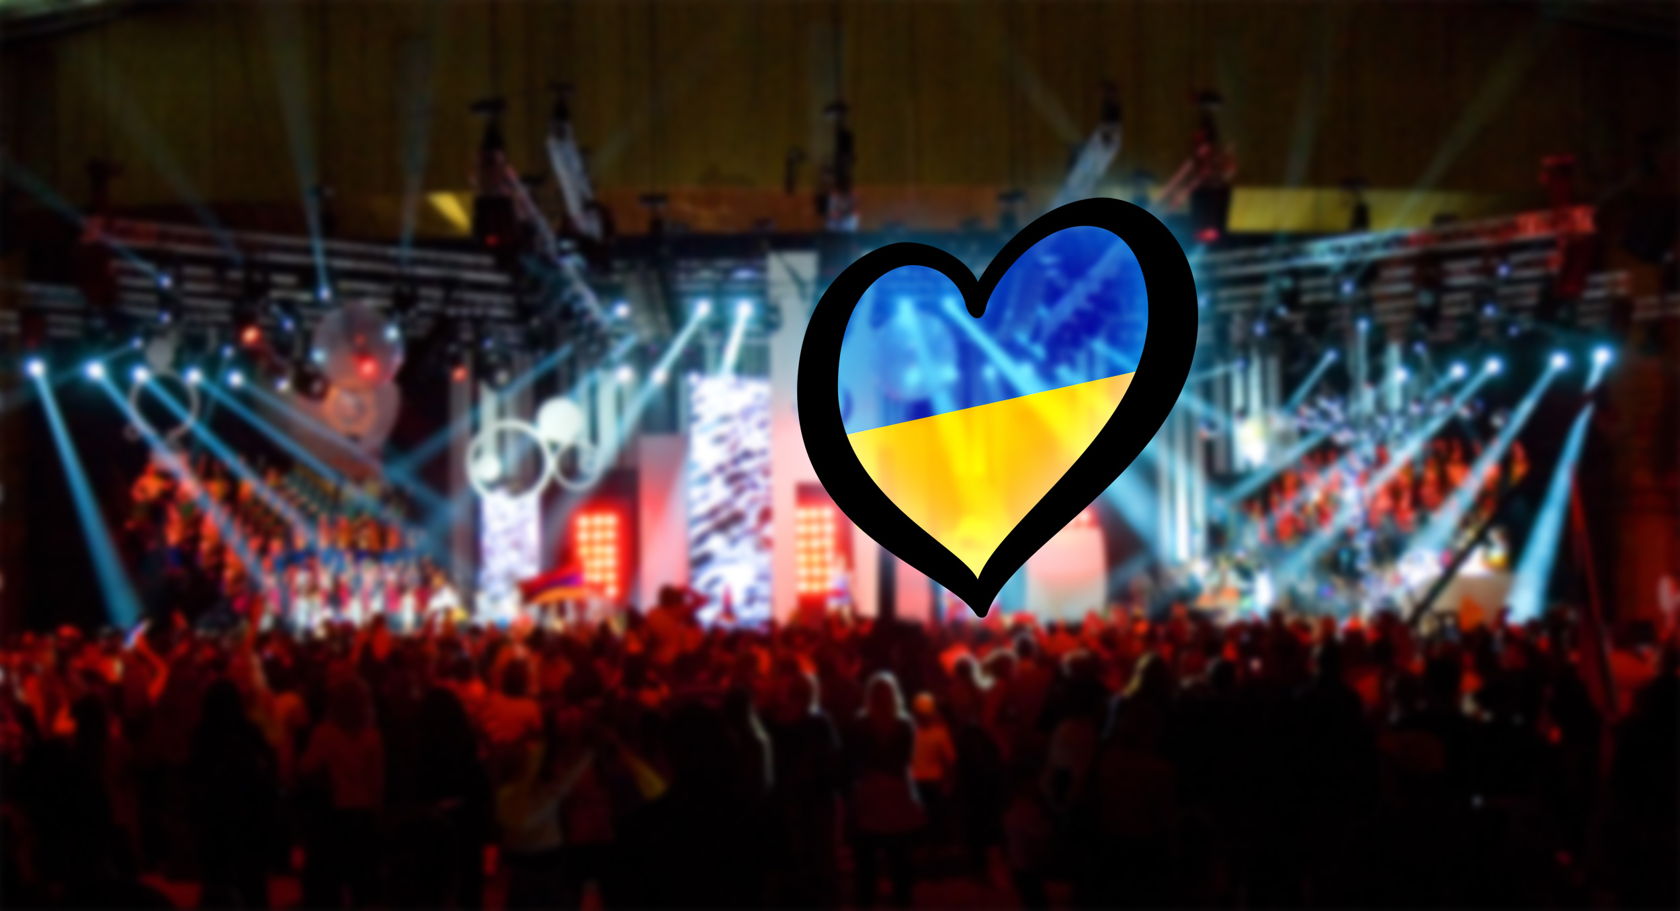 Первый полуфинал Евровидения-2017 состоится в Киеве во вторник, 9 мая. Трансляция начнется в 22:00.